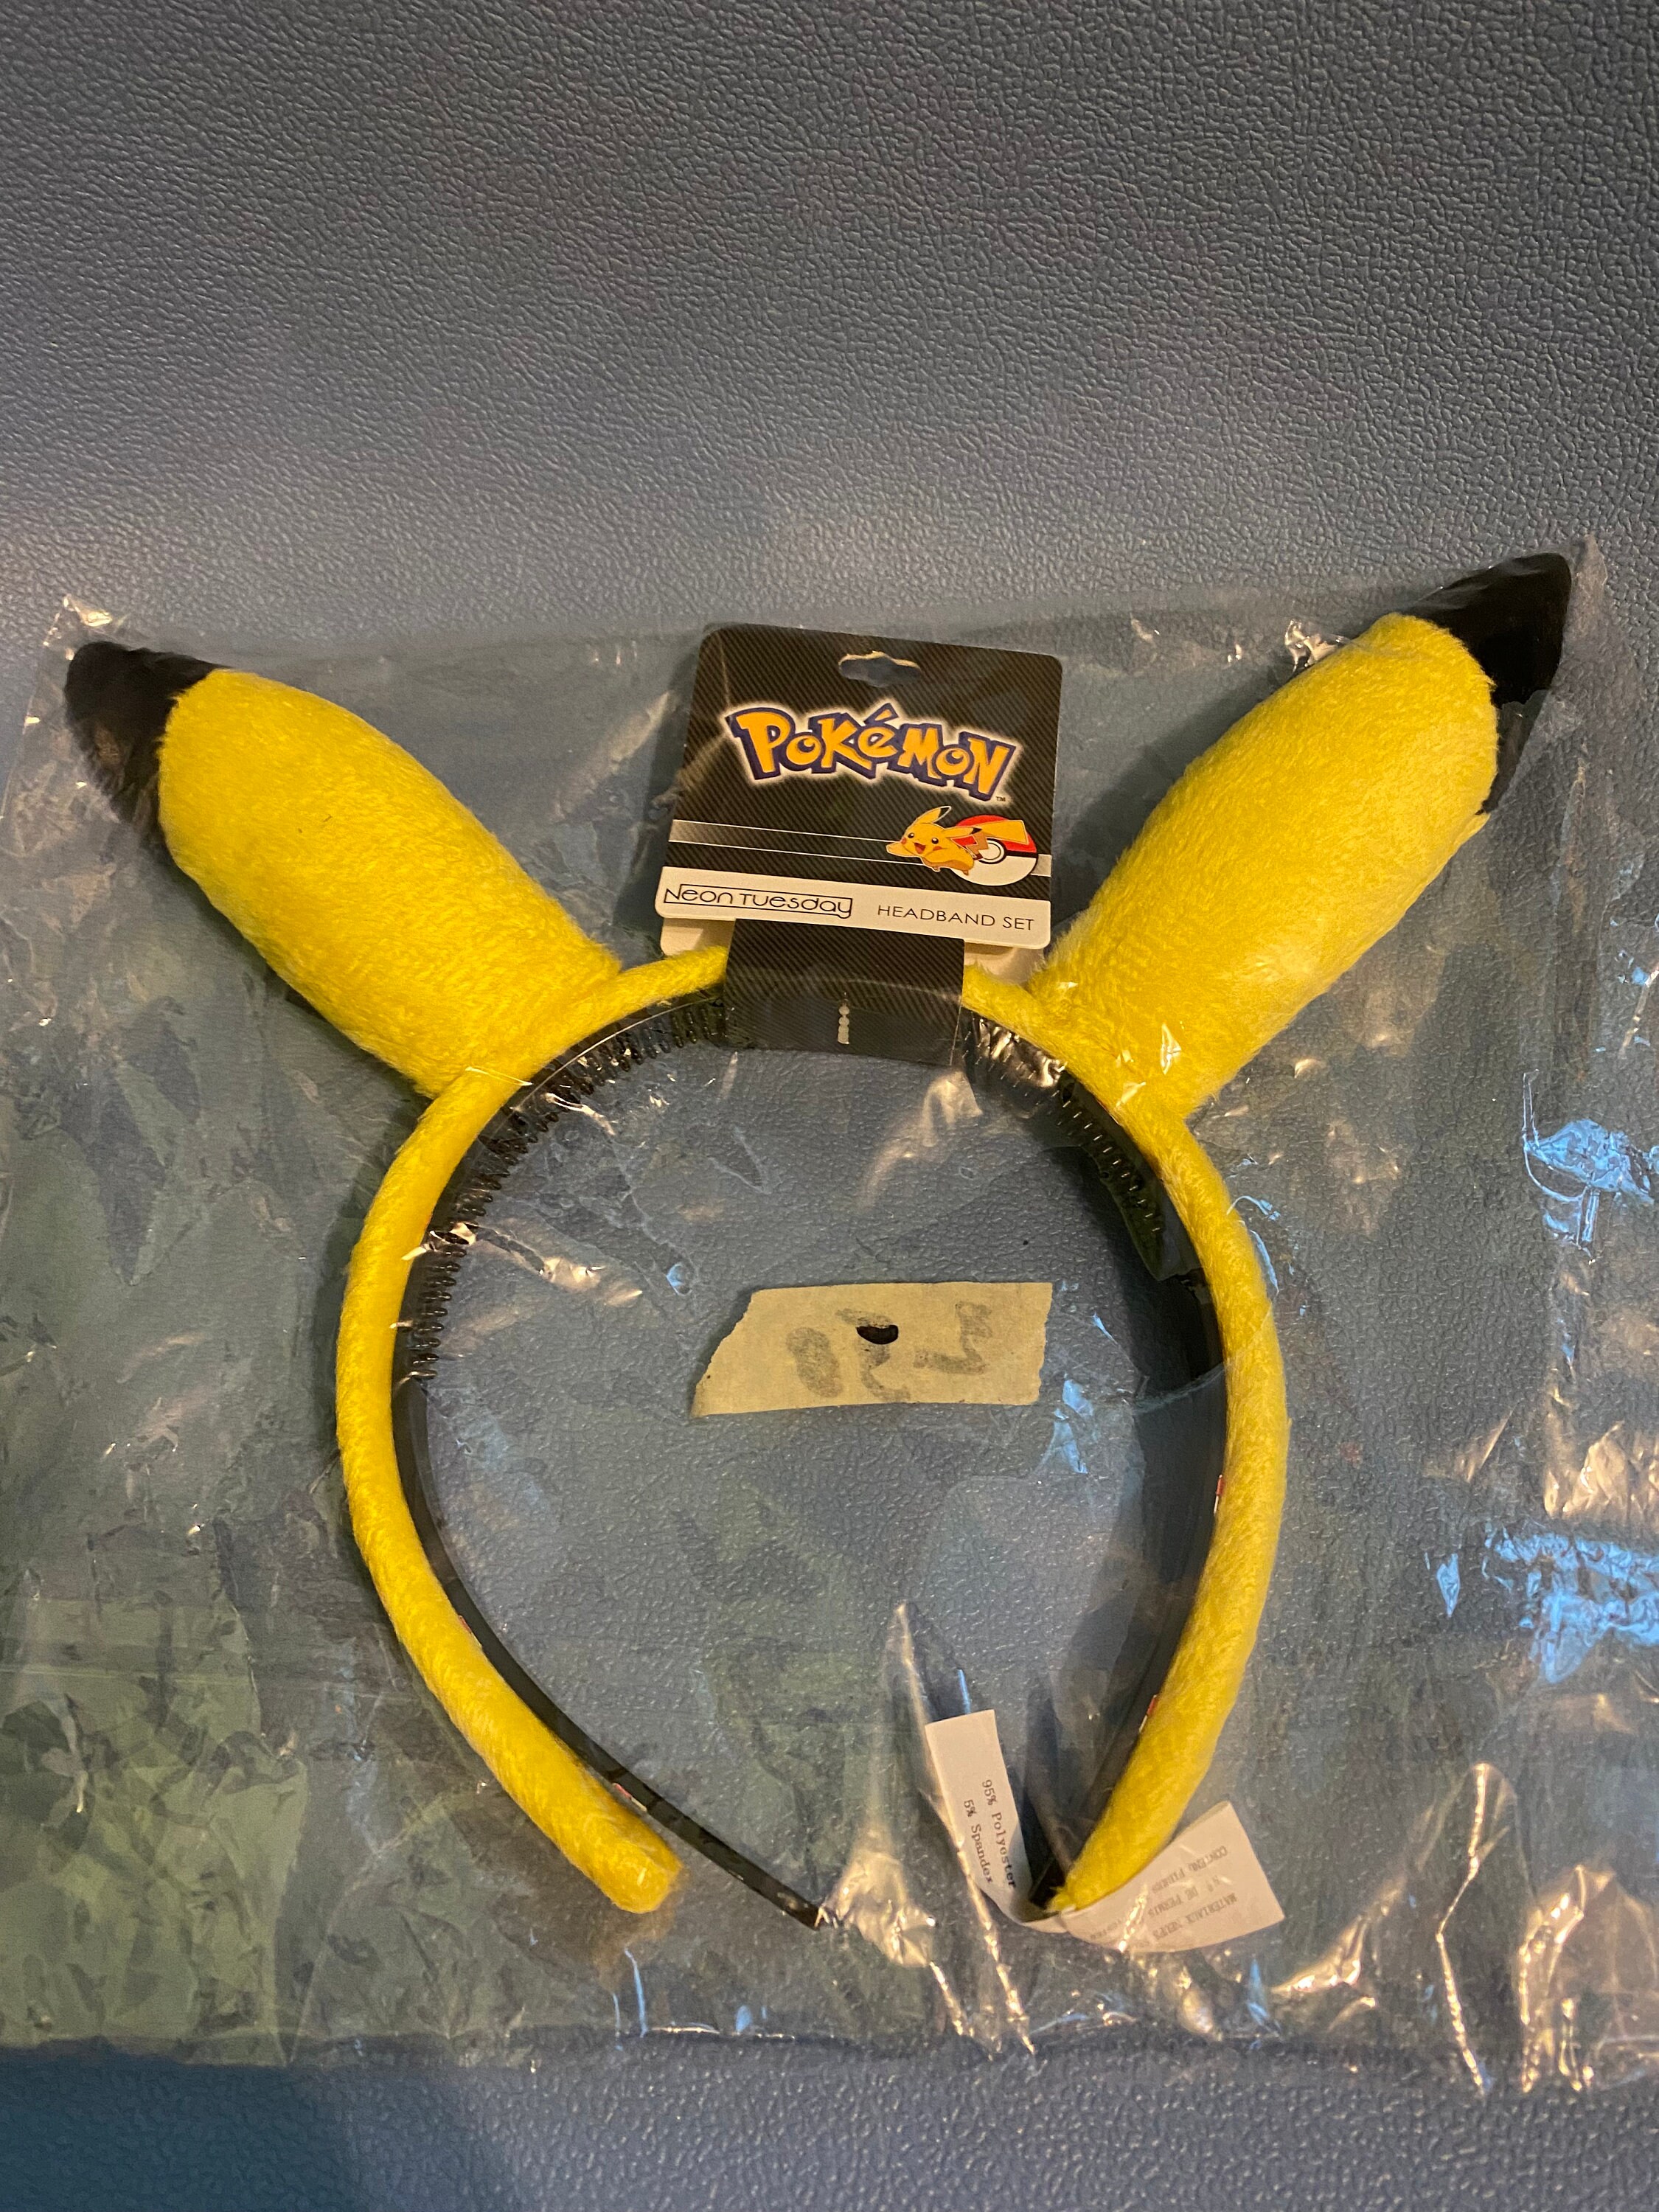 DIY: Pikachu's Ears 